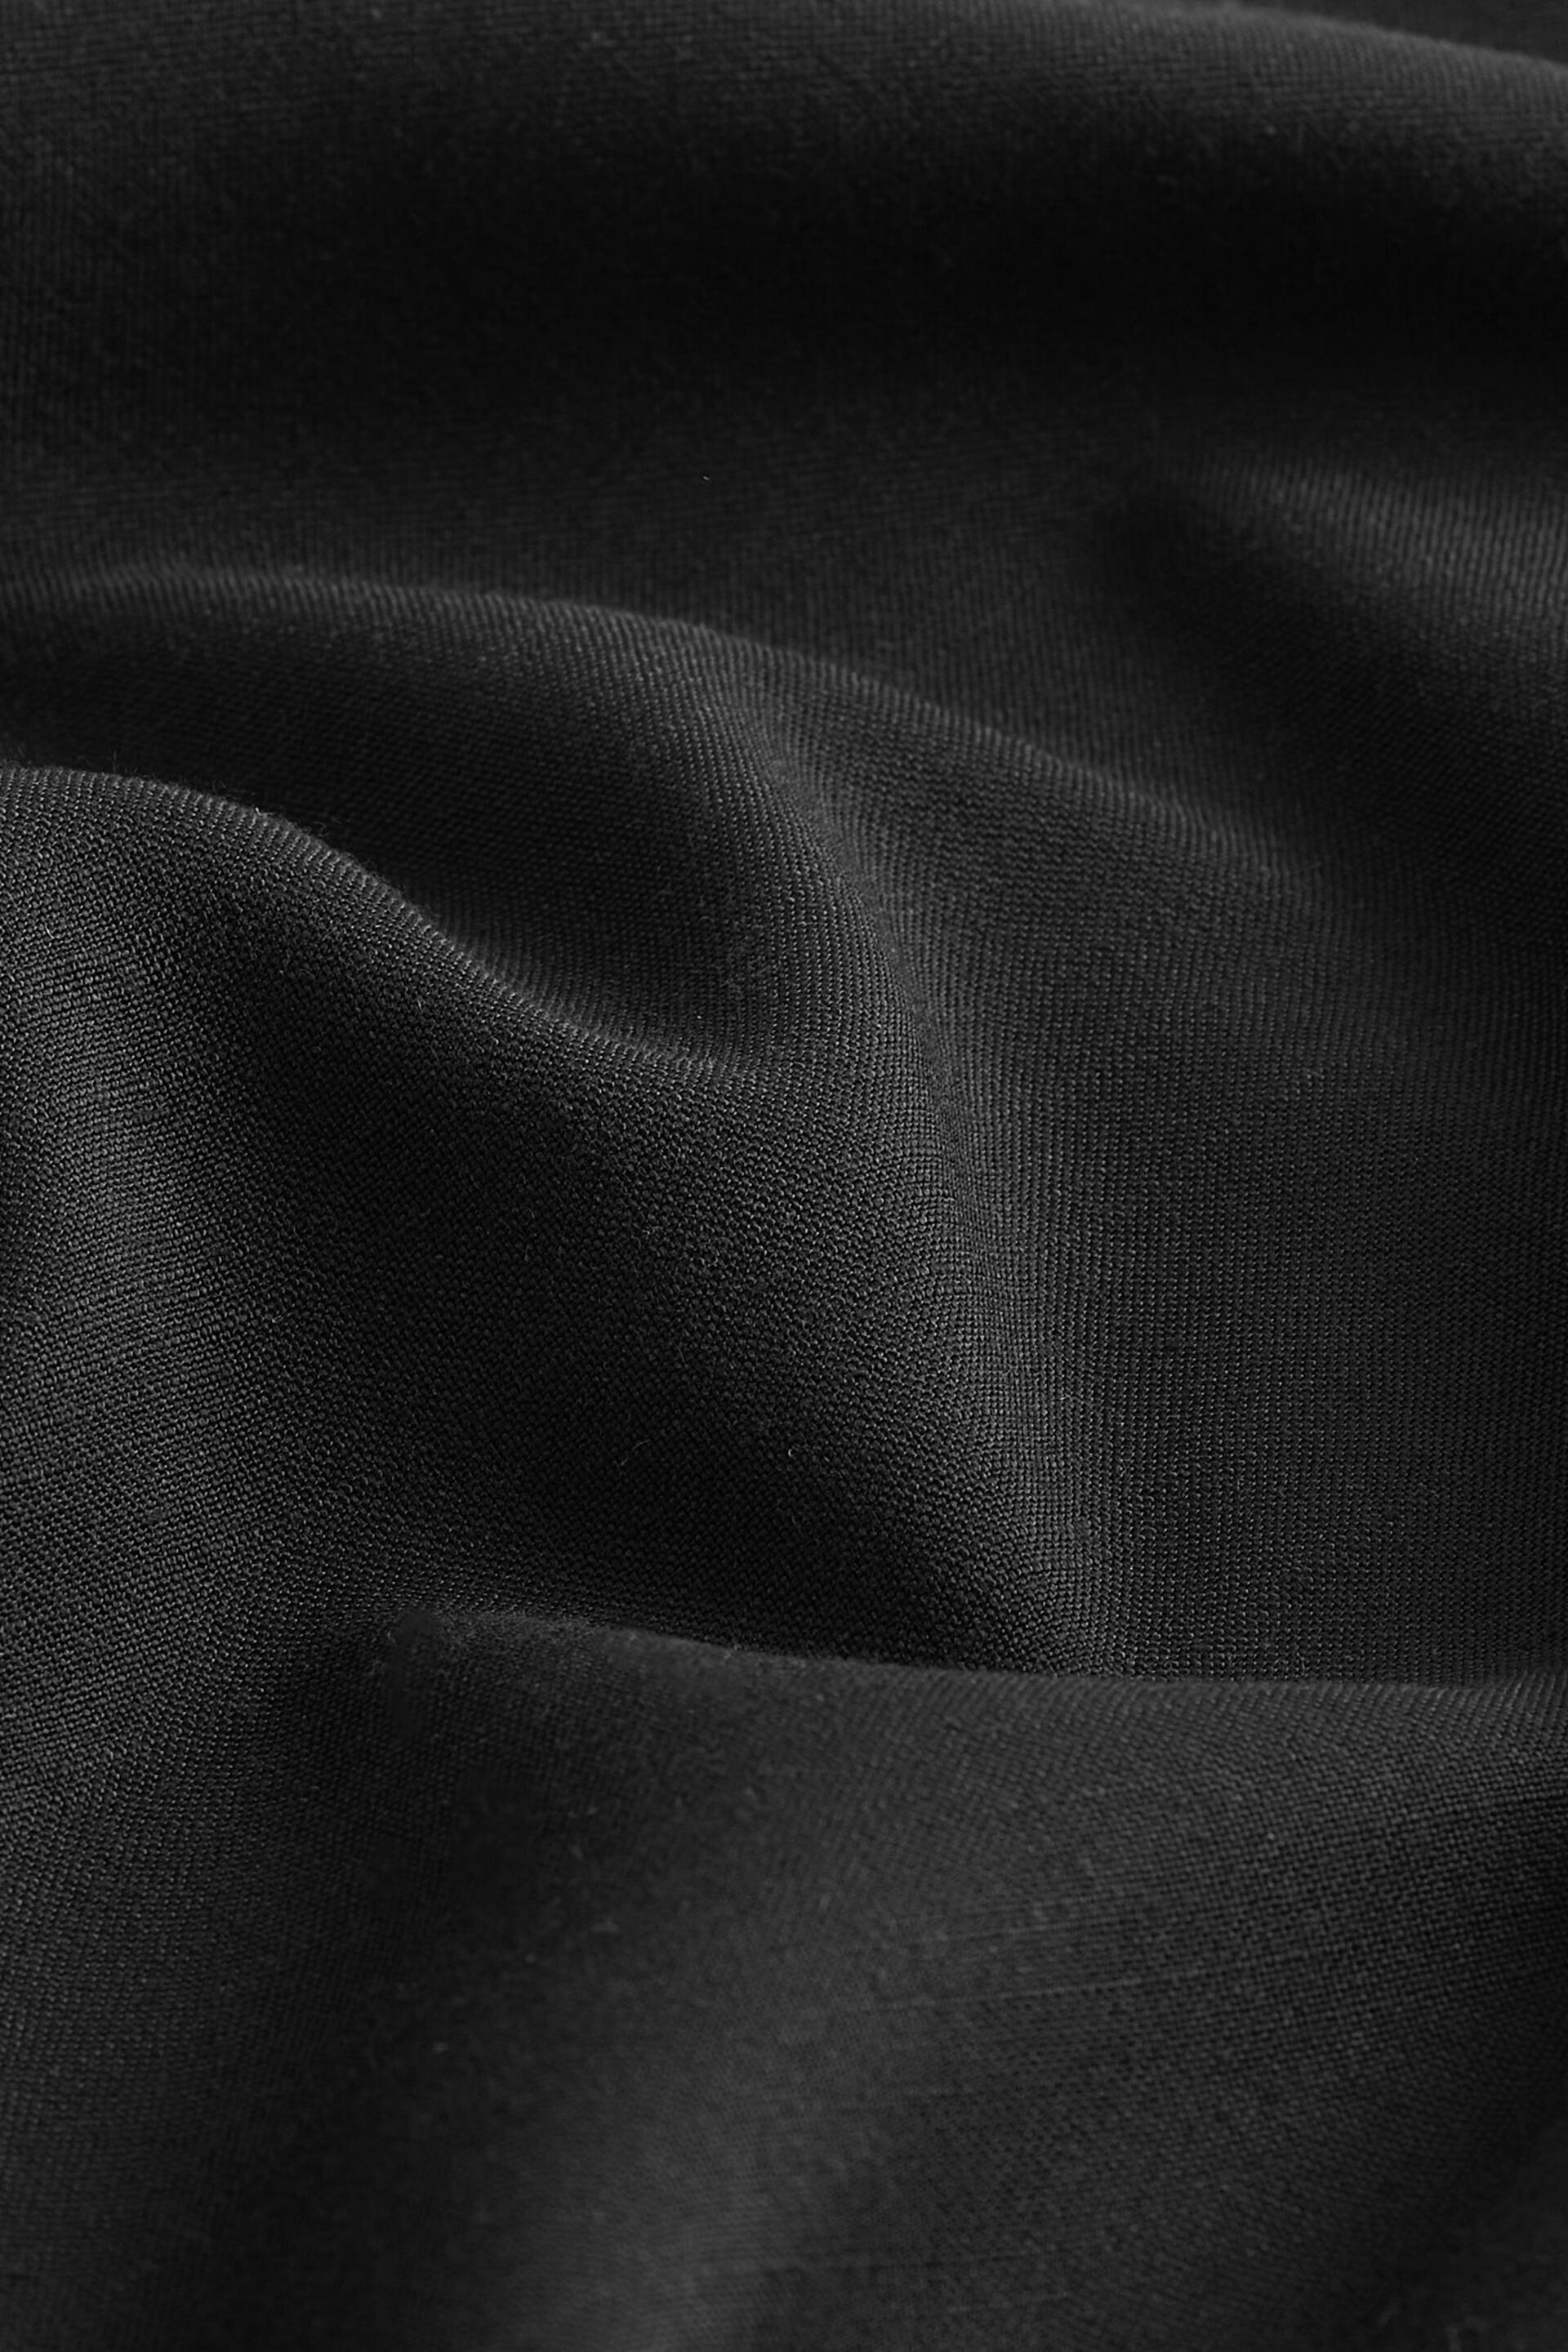 Black Corsage Halter Dress - Image 8 of 8